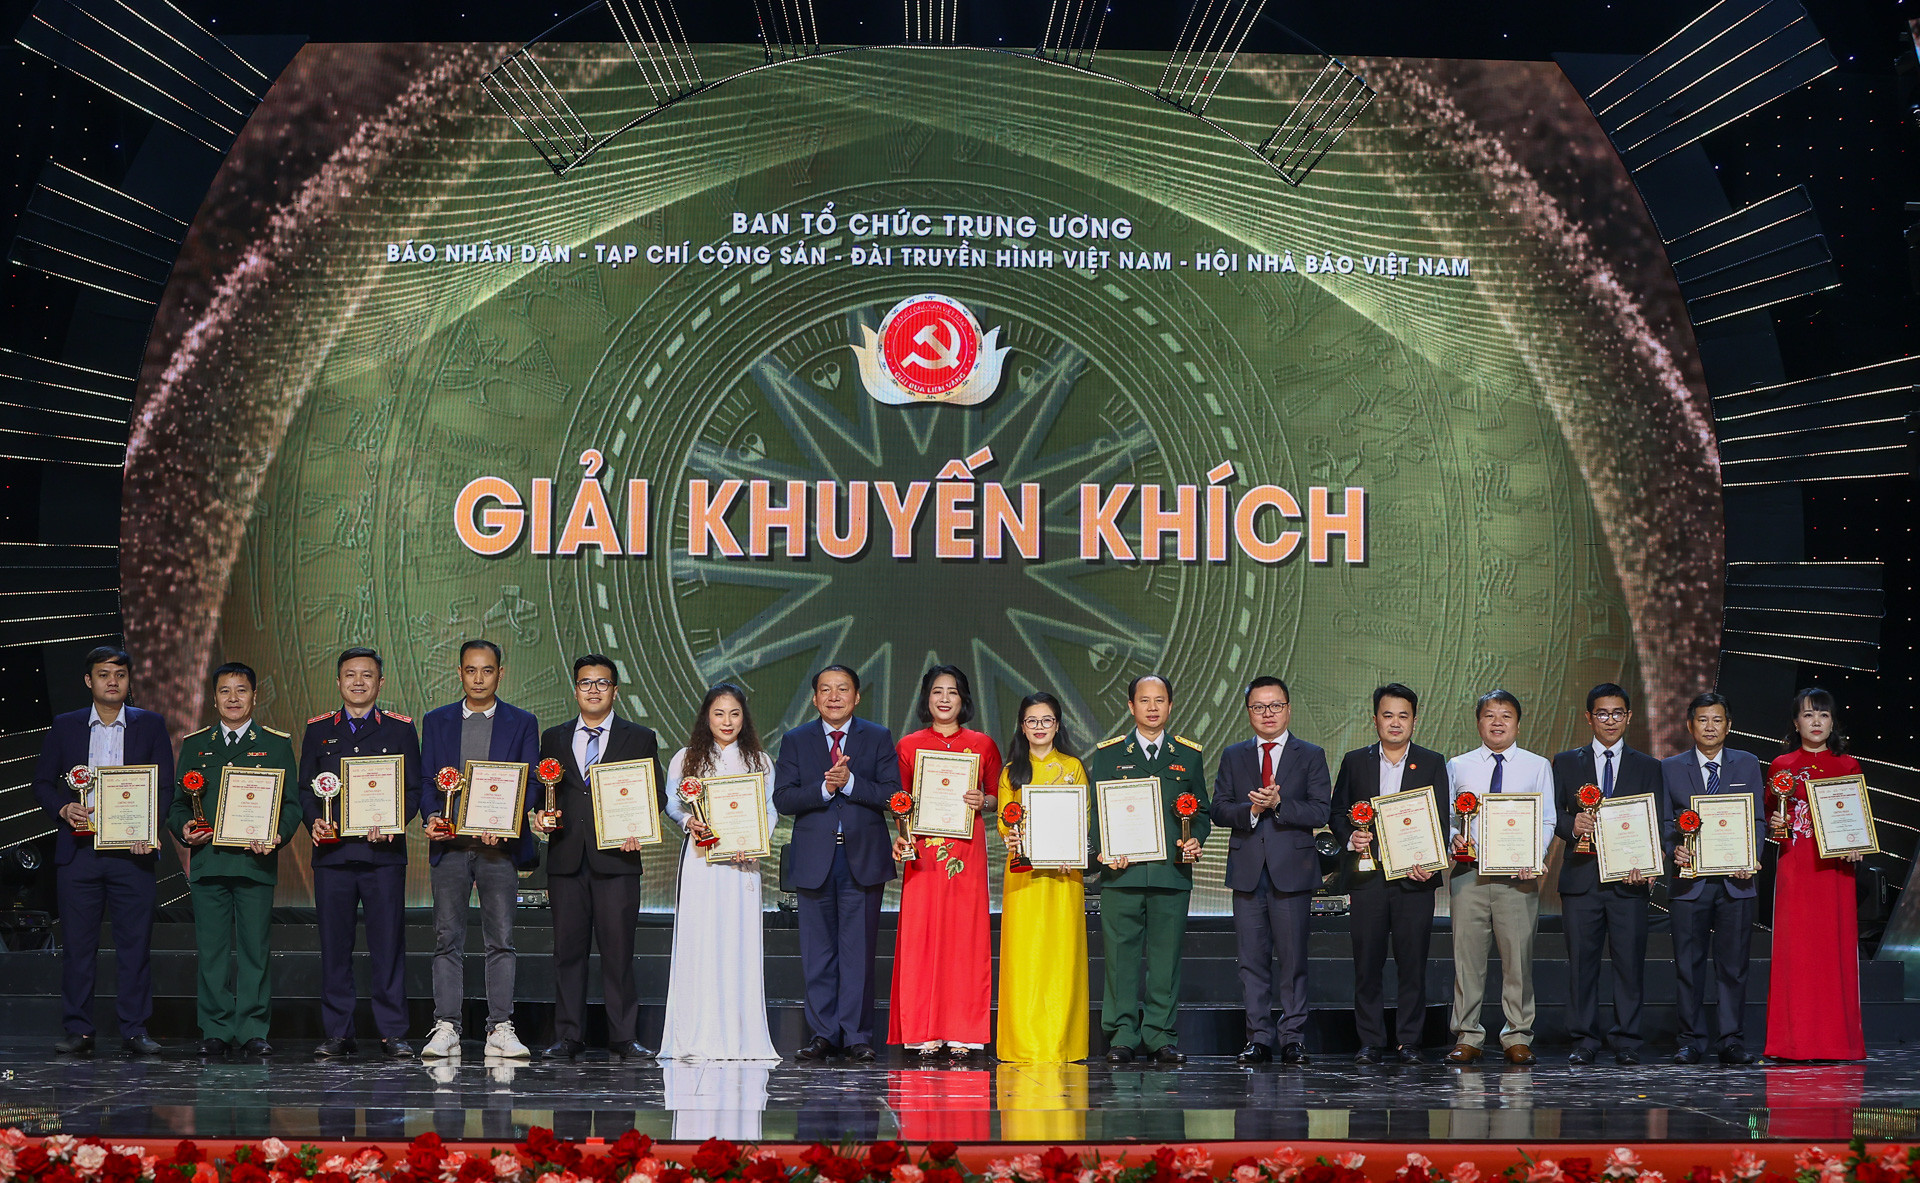 Đại diện nhóm tác giả Báo VietNamNet (thứ 4, từ trái sang) nhận giải Khuyến khích.